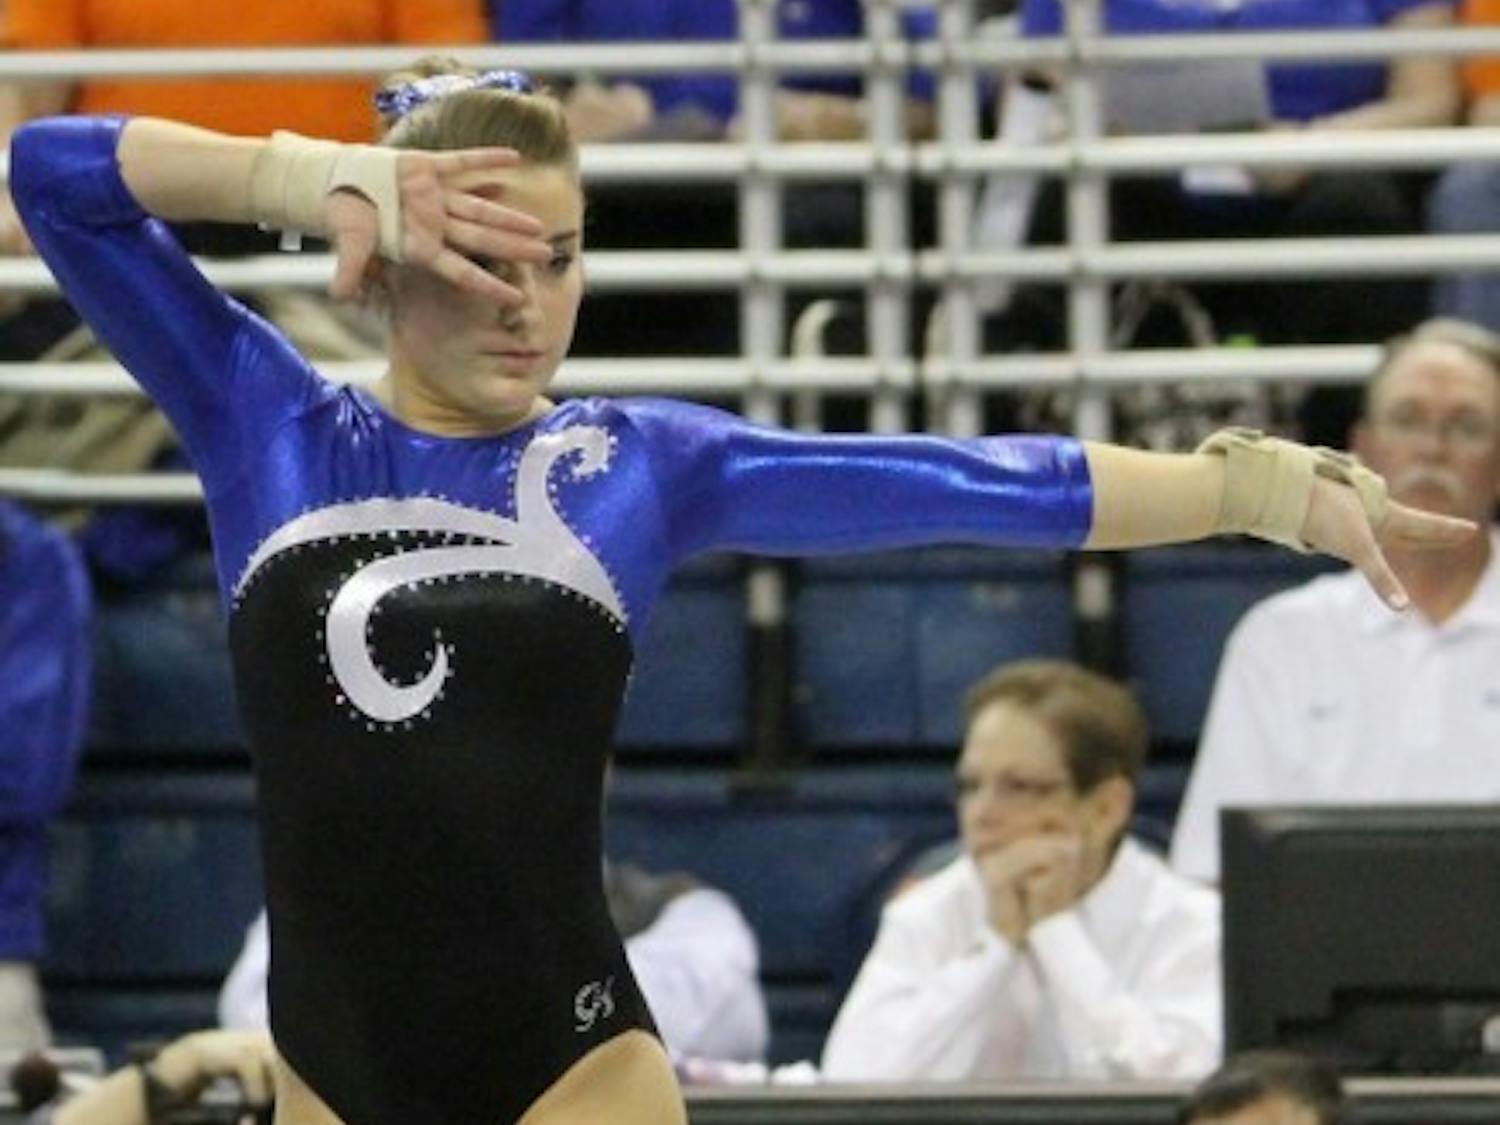 Florida senior gymnast Amy Ferguson scored a season-high 9.875 on floor against LSU last weekend.